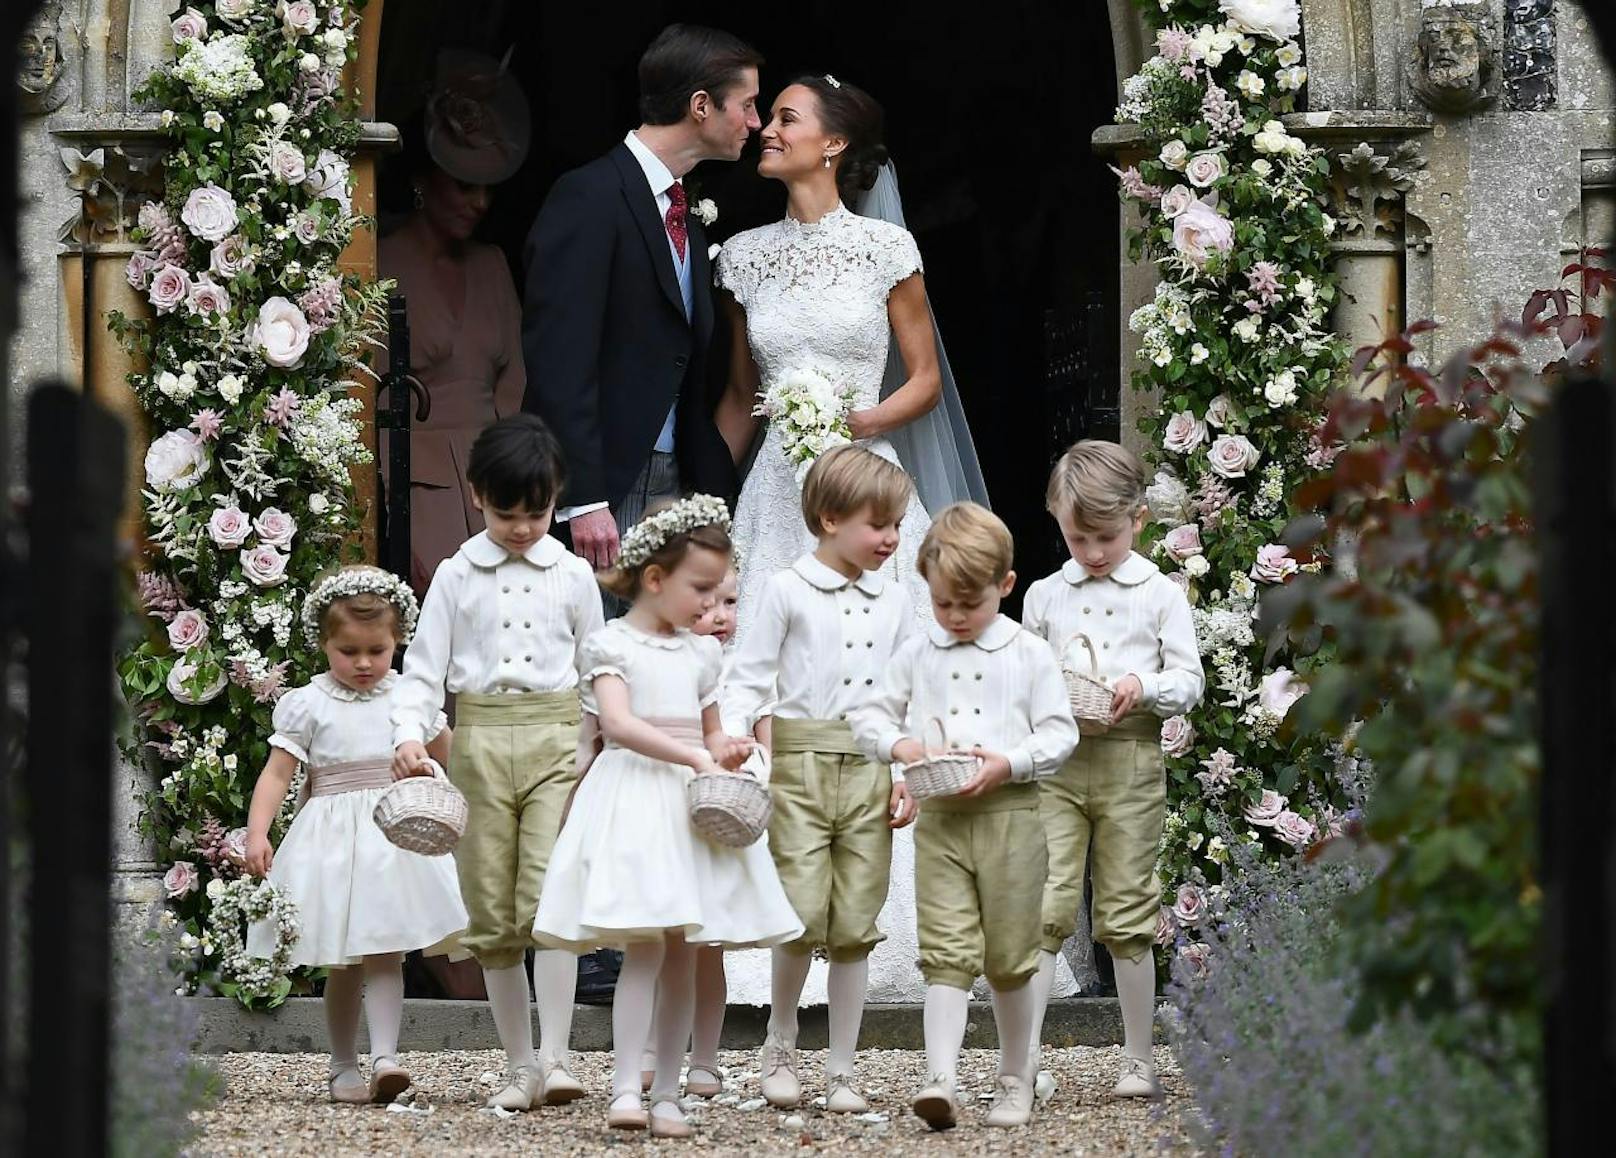 20.05.2017: Pippa Middleton und James Matthews haben heute geheiratet!